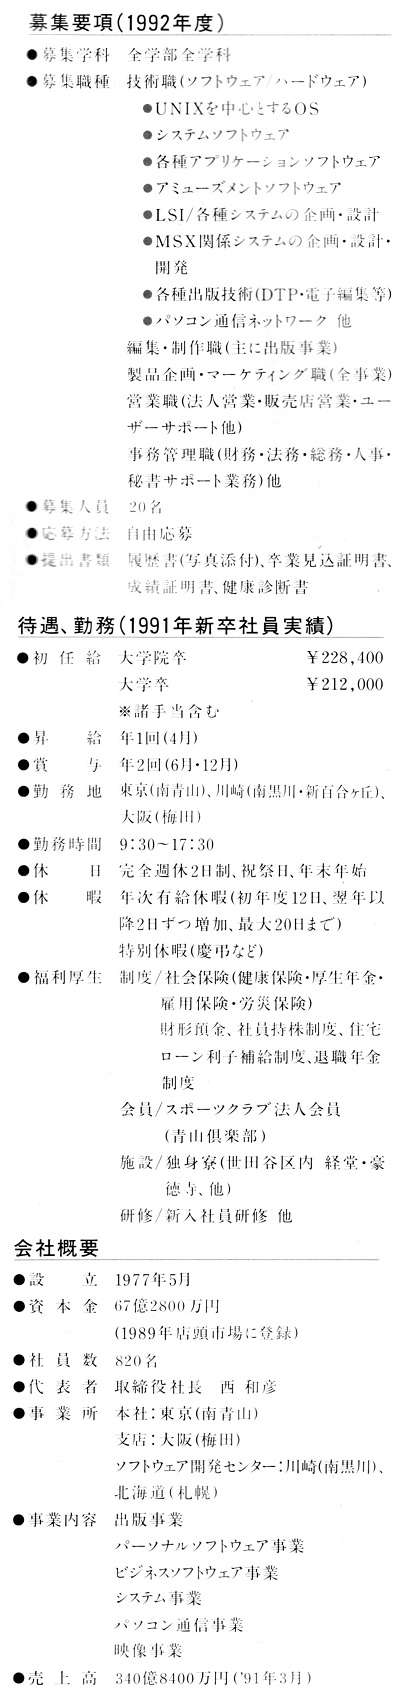 ASCII1992(01)a46アスキー募集要項_W401.jpg